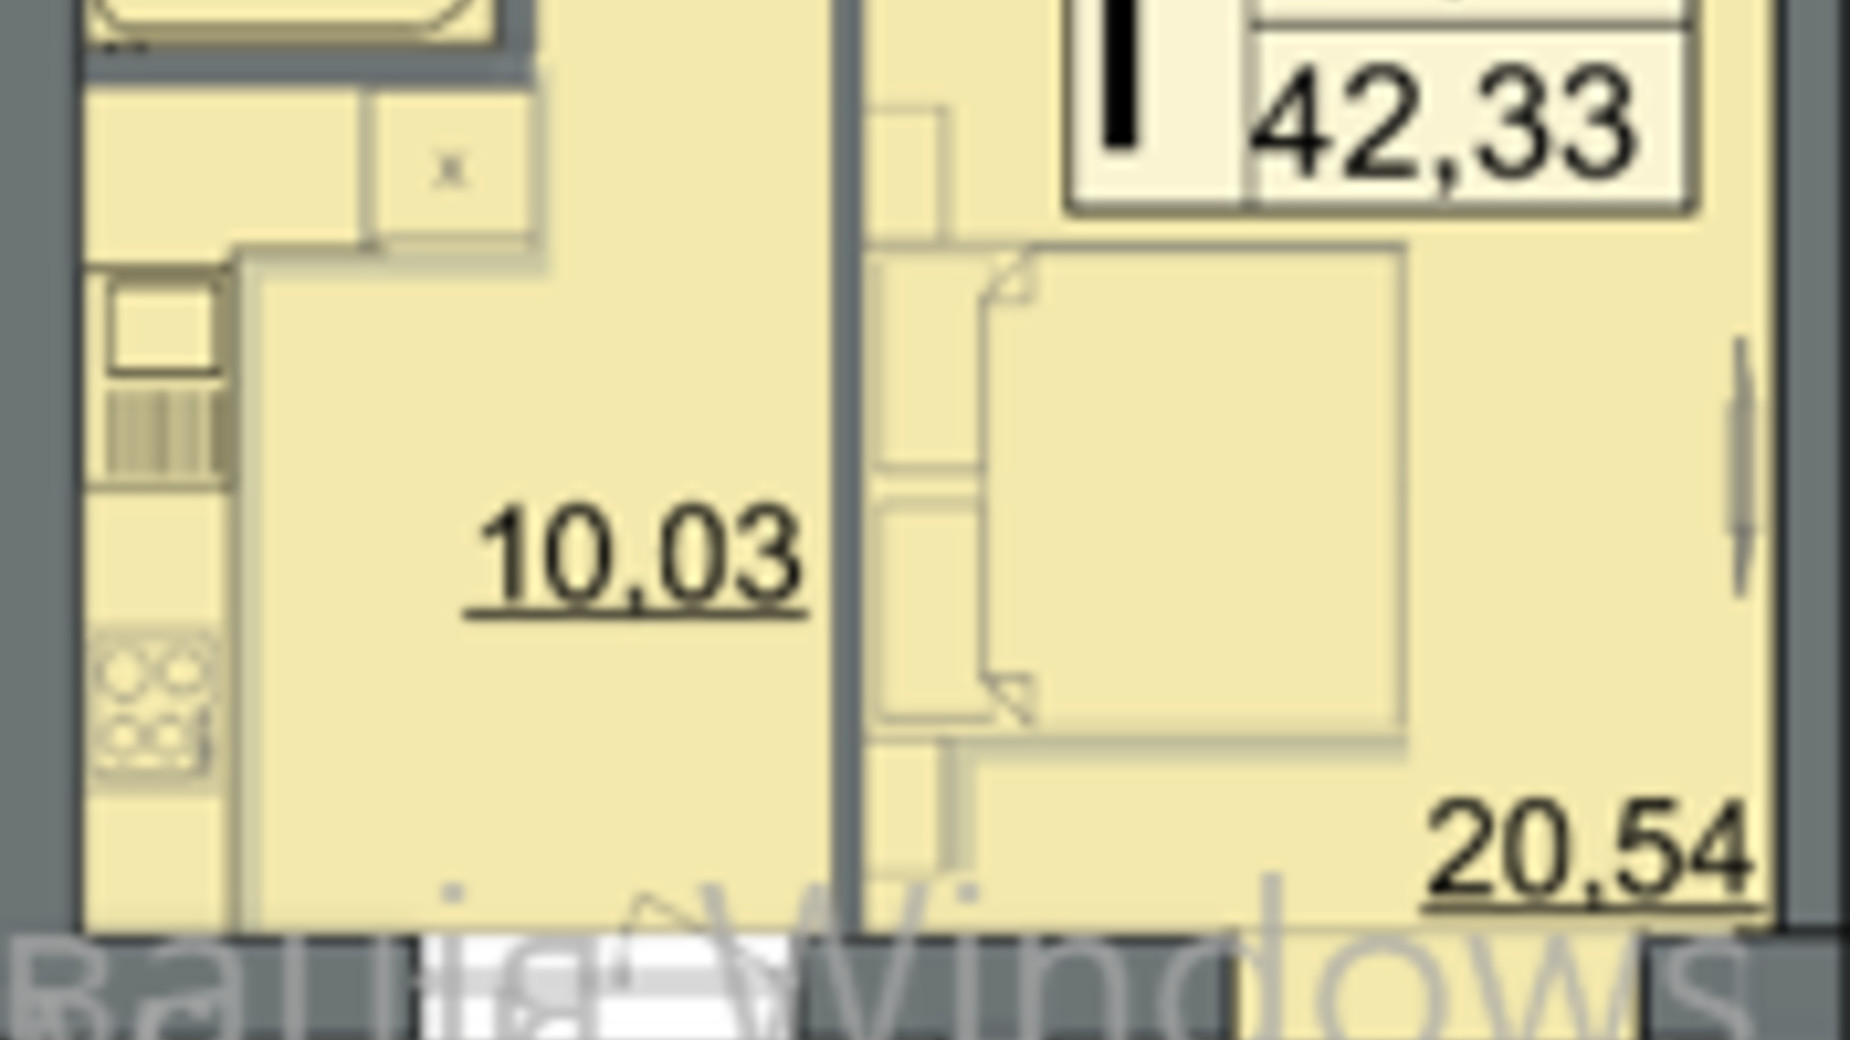 Планировка 1-комнатной квартиры в ЖК Sportcity 42.33 м², фото 617722